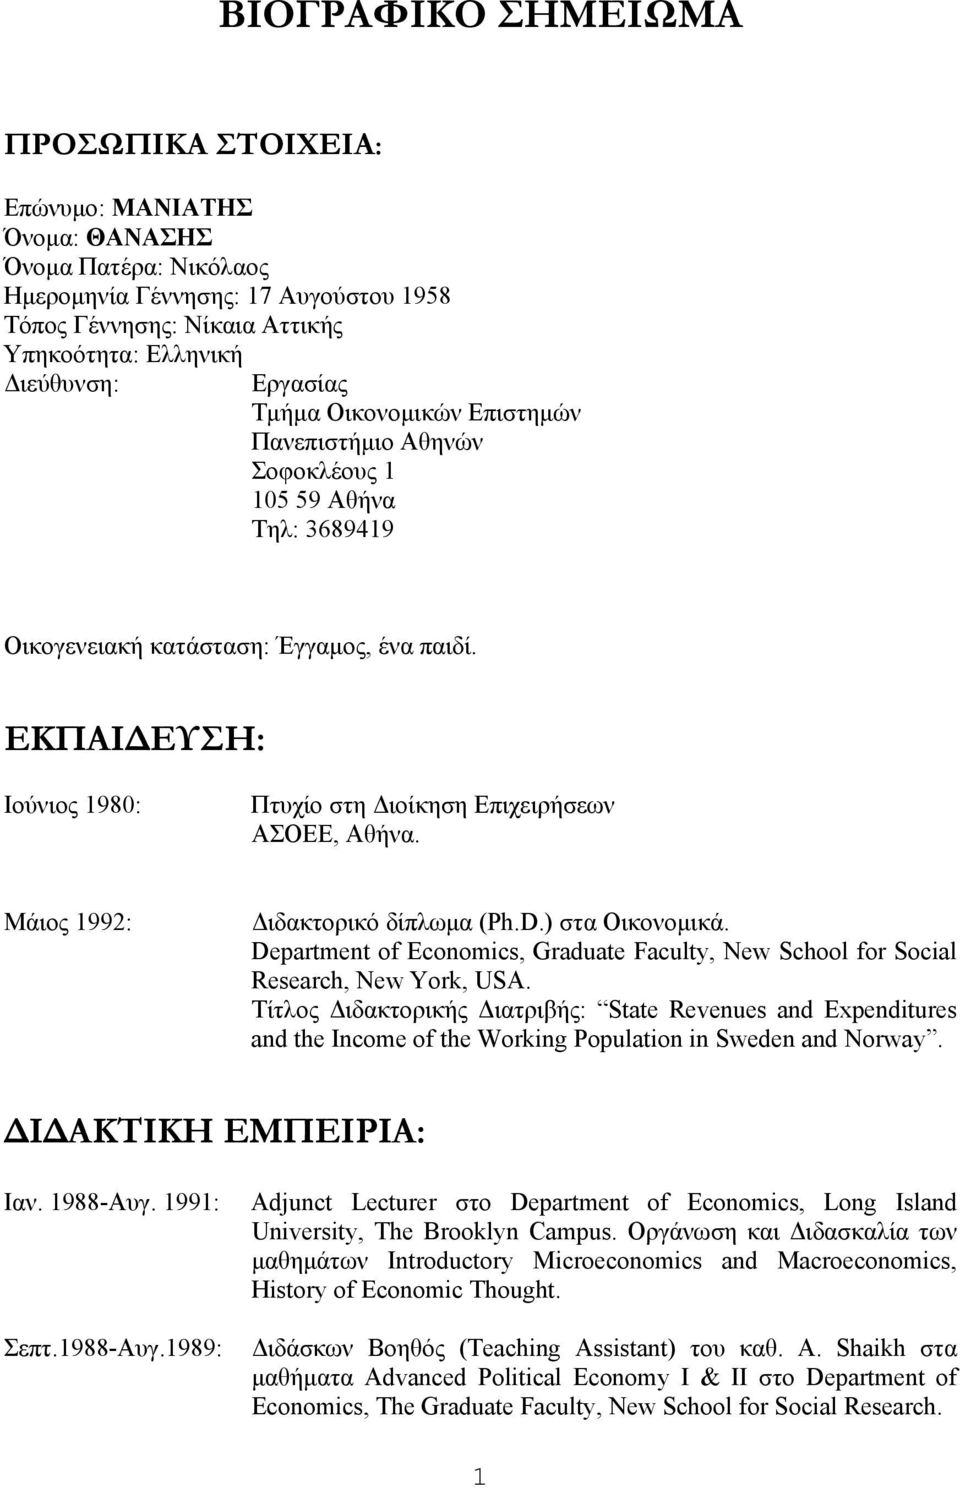 ΕΚΠΑΙΔΕΥΣΗ: Ιούνιος 1980: Πτυχίο στη Διοίκηση Επιχειρήσεων ΑΣΟΕΕ, Αθήνα. Μάιος 1992: Διδακτορικό δίπλωμα (Ph.D.) στα Οικονομικά.